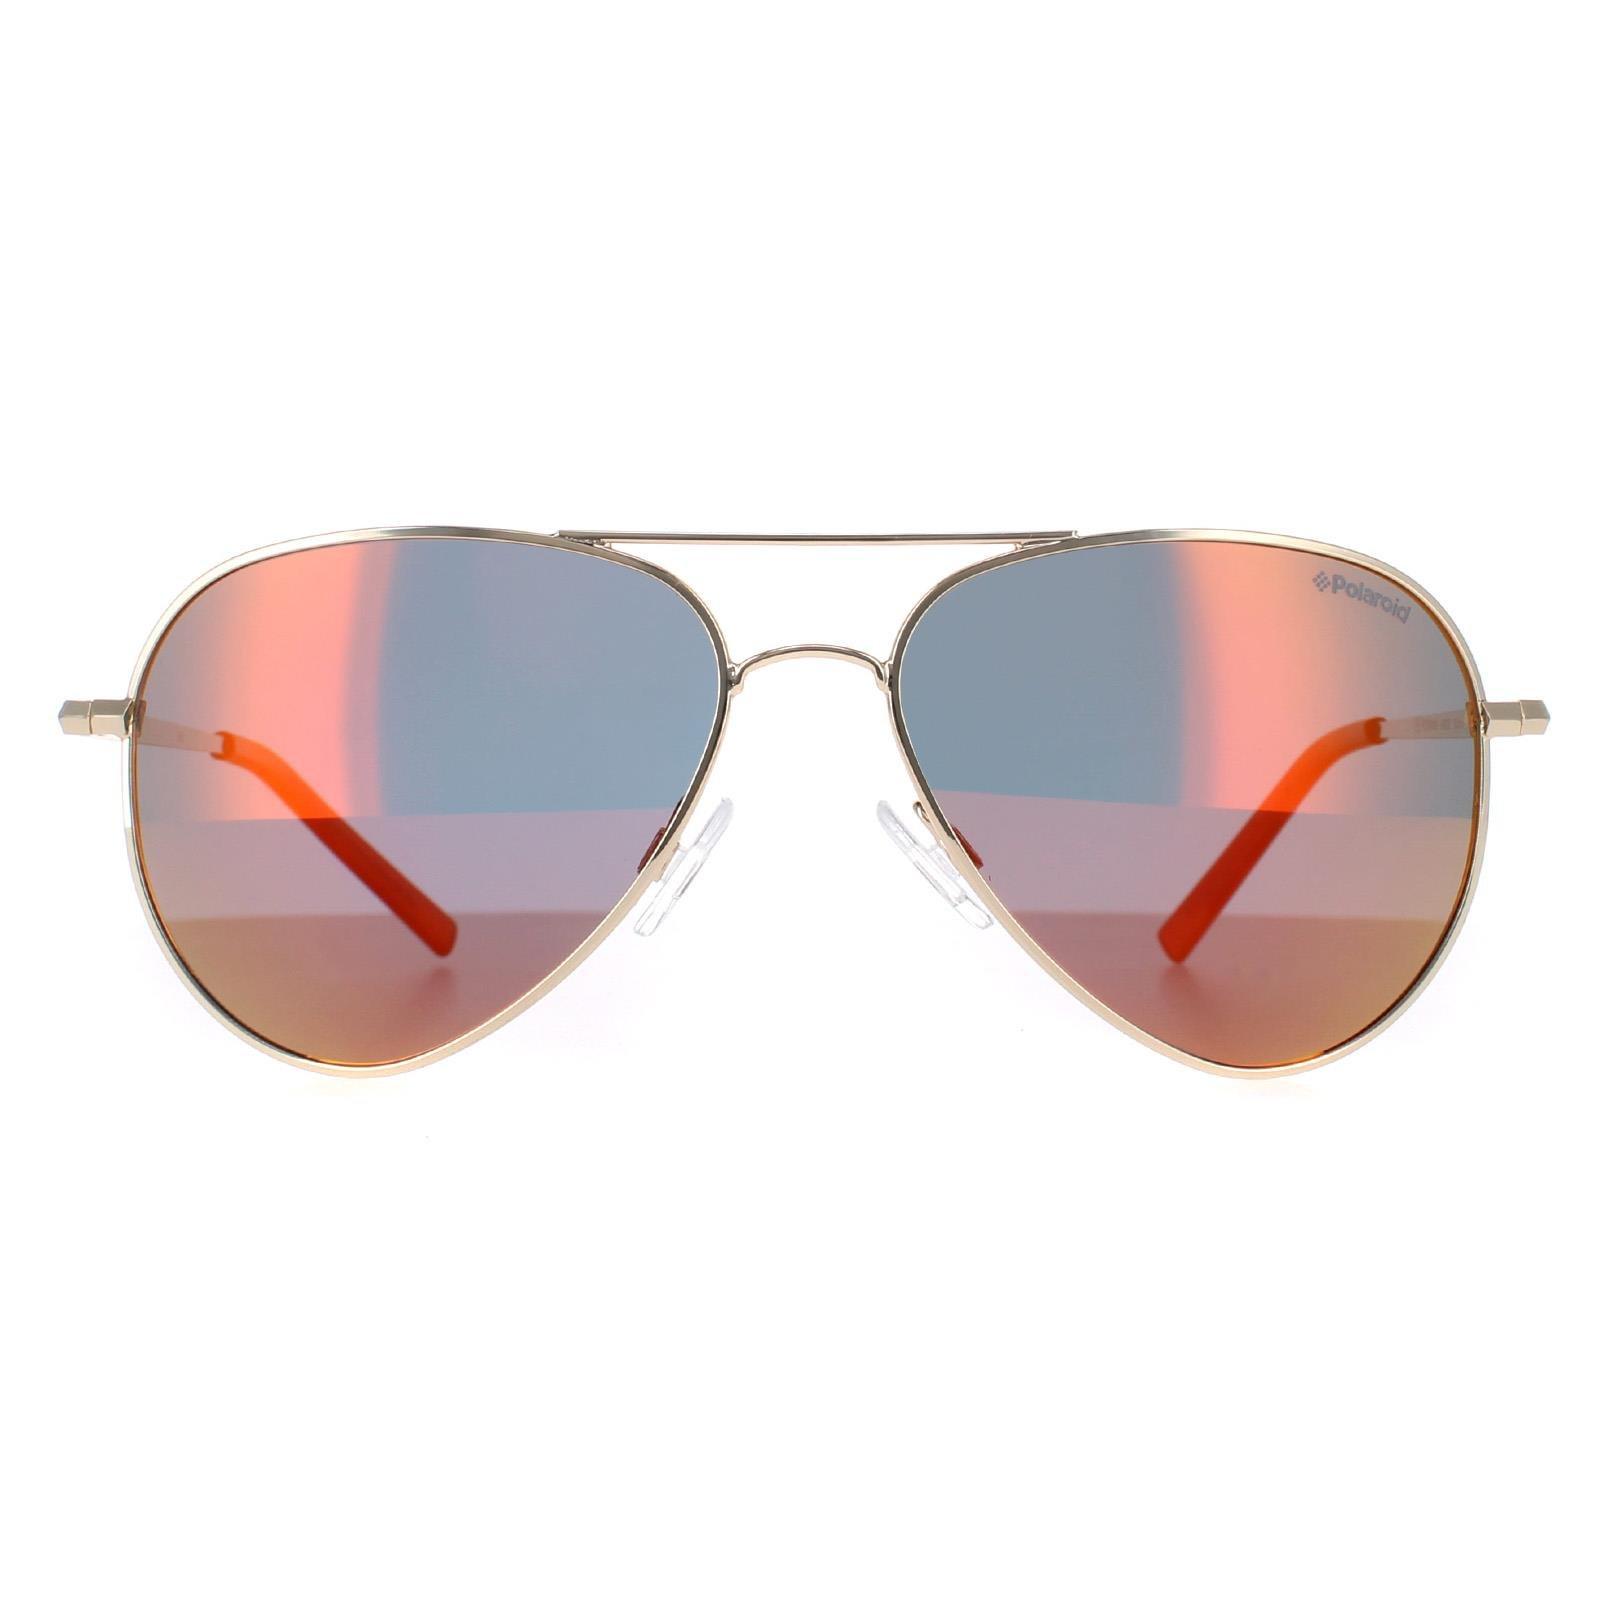 Солнцезащитные очки Aviator Золотые Красные Зеркальные Поляризованные PLD 6012/N Polaroid, золото